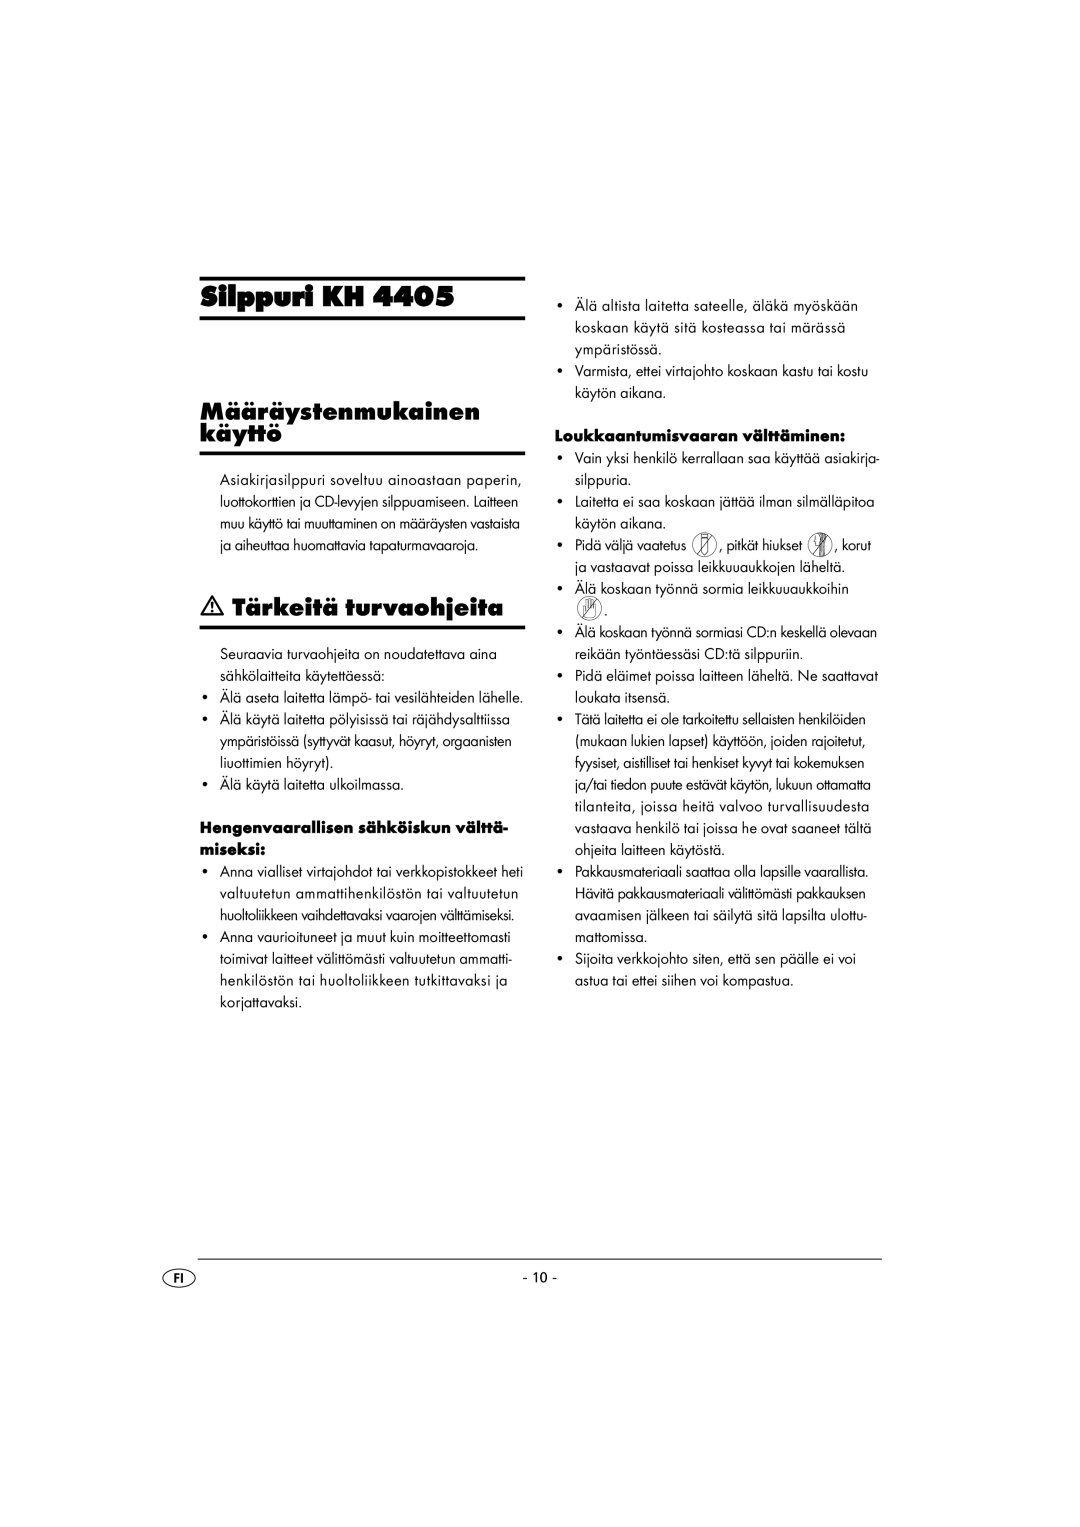 Kompernass KH 4405 manual Silppuri KH, Määräystenmukainen käyttö, Tärkeitä turvaohjeita 